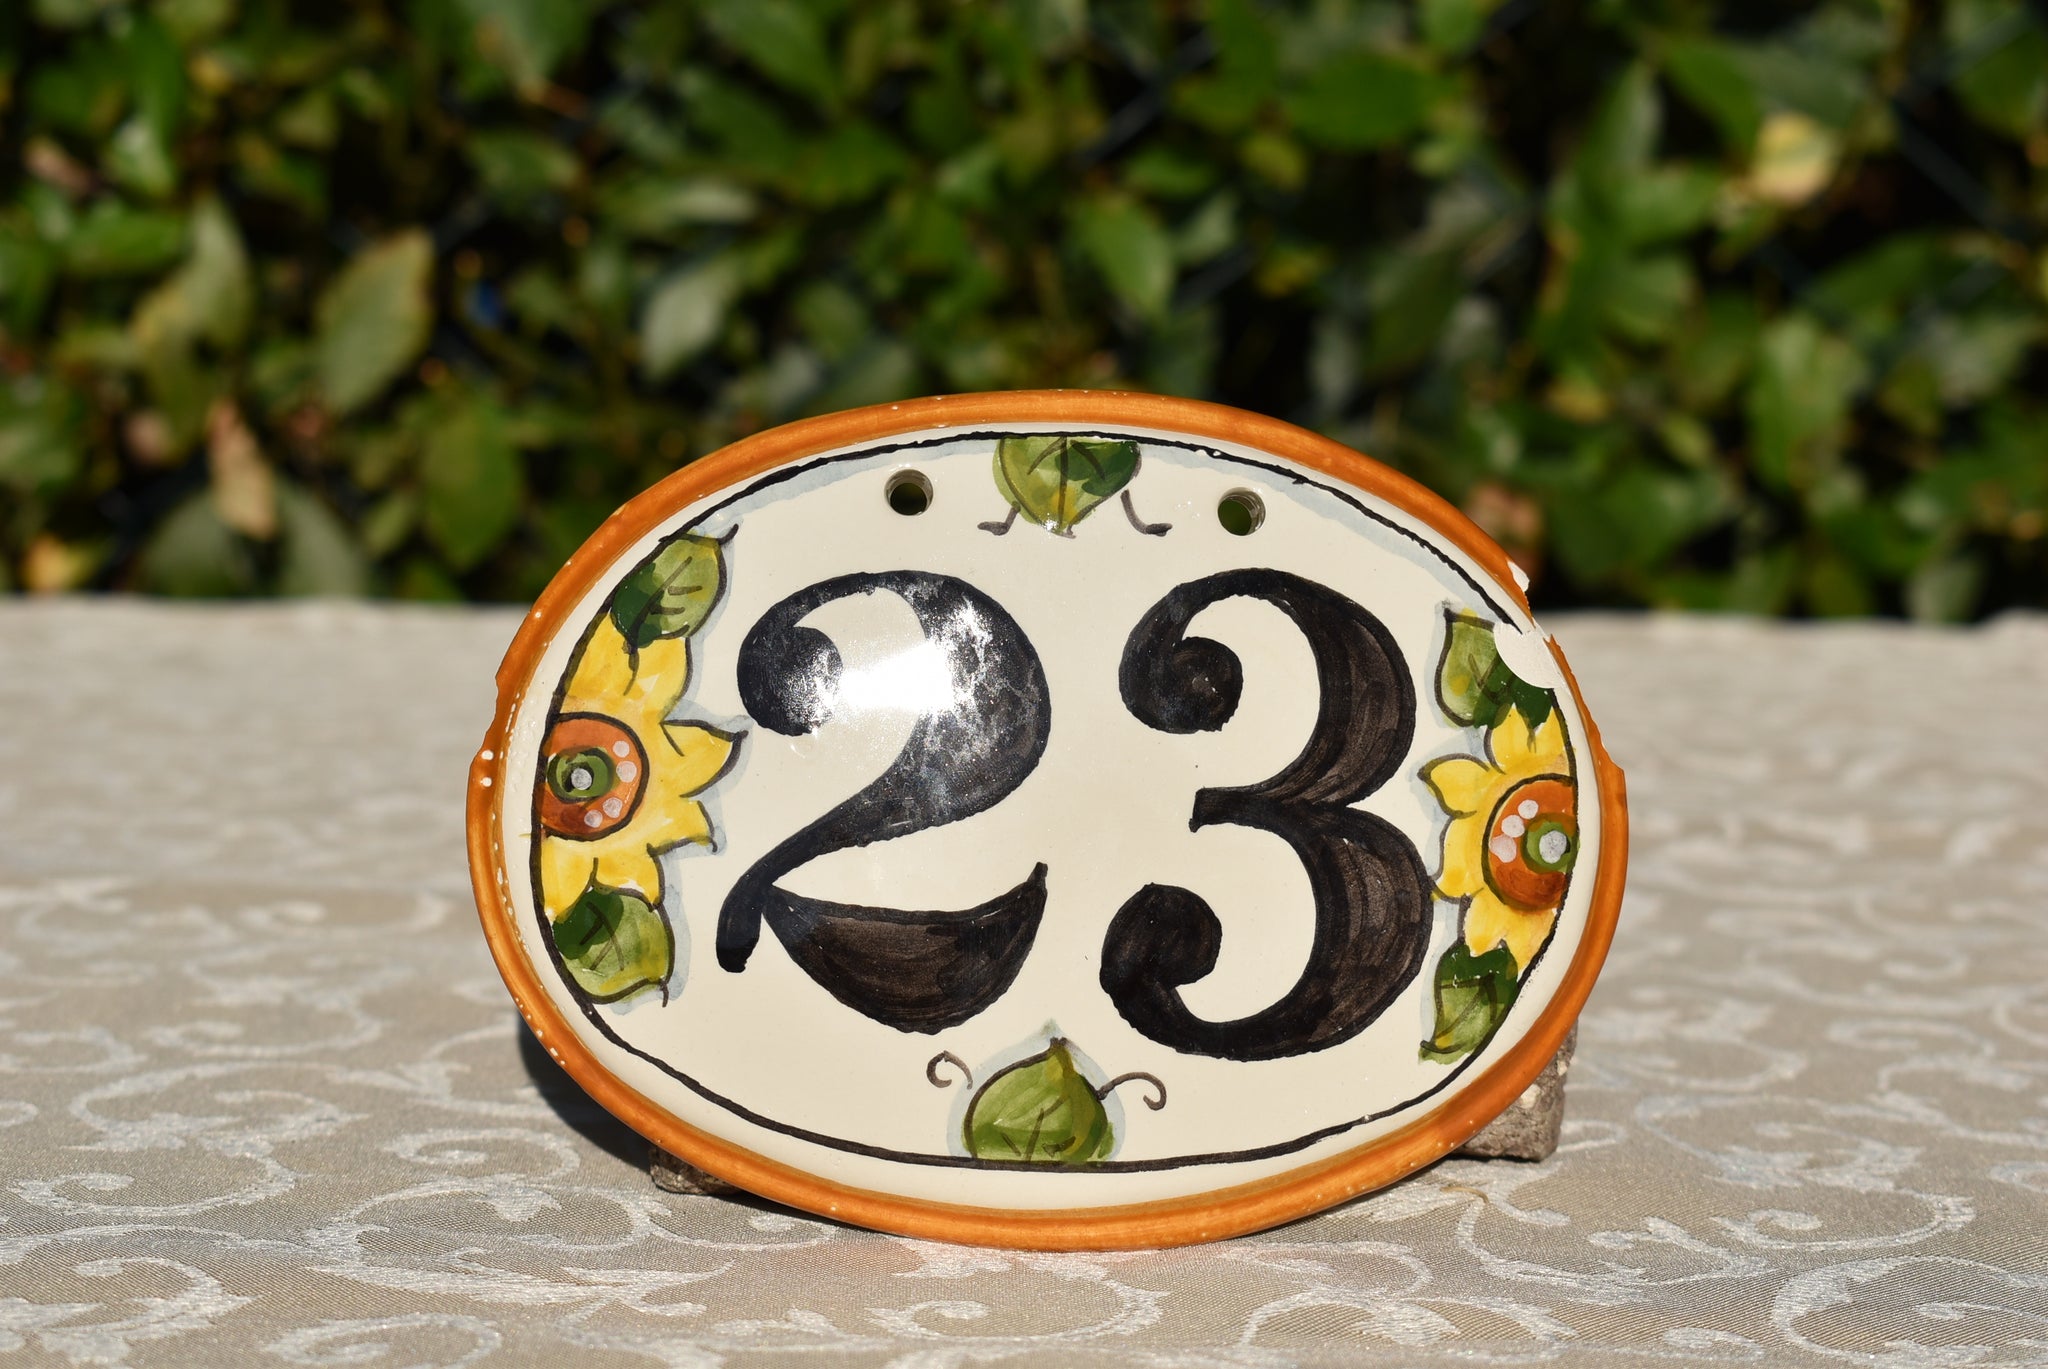 Ceramic tile number